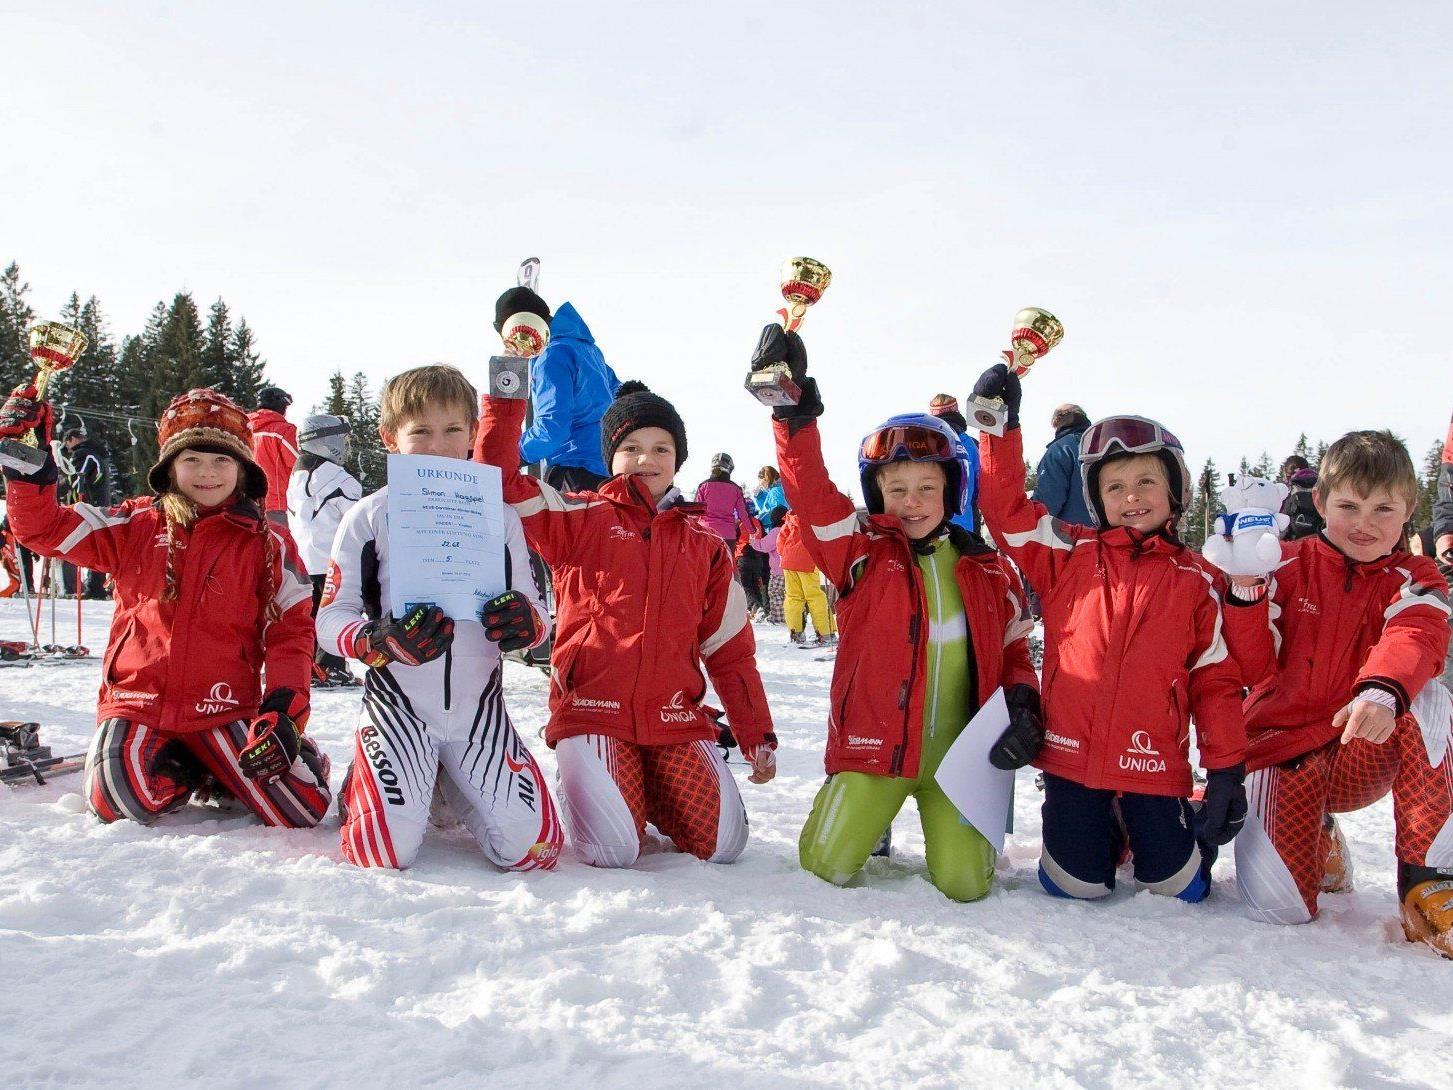 Am Sonntag, 27. Jänner findet am Bödele wieder der Kinder Skitag statt.